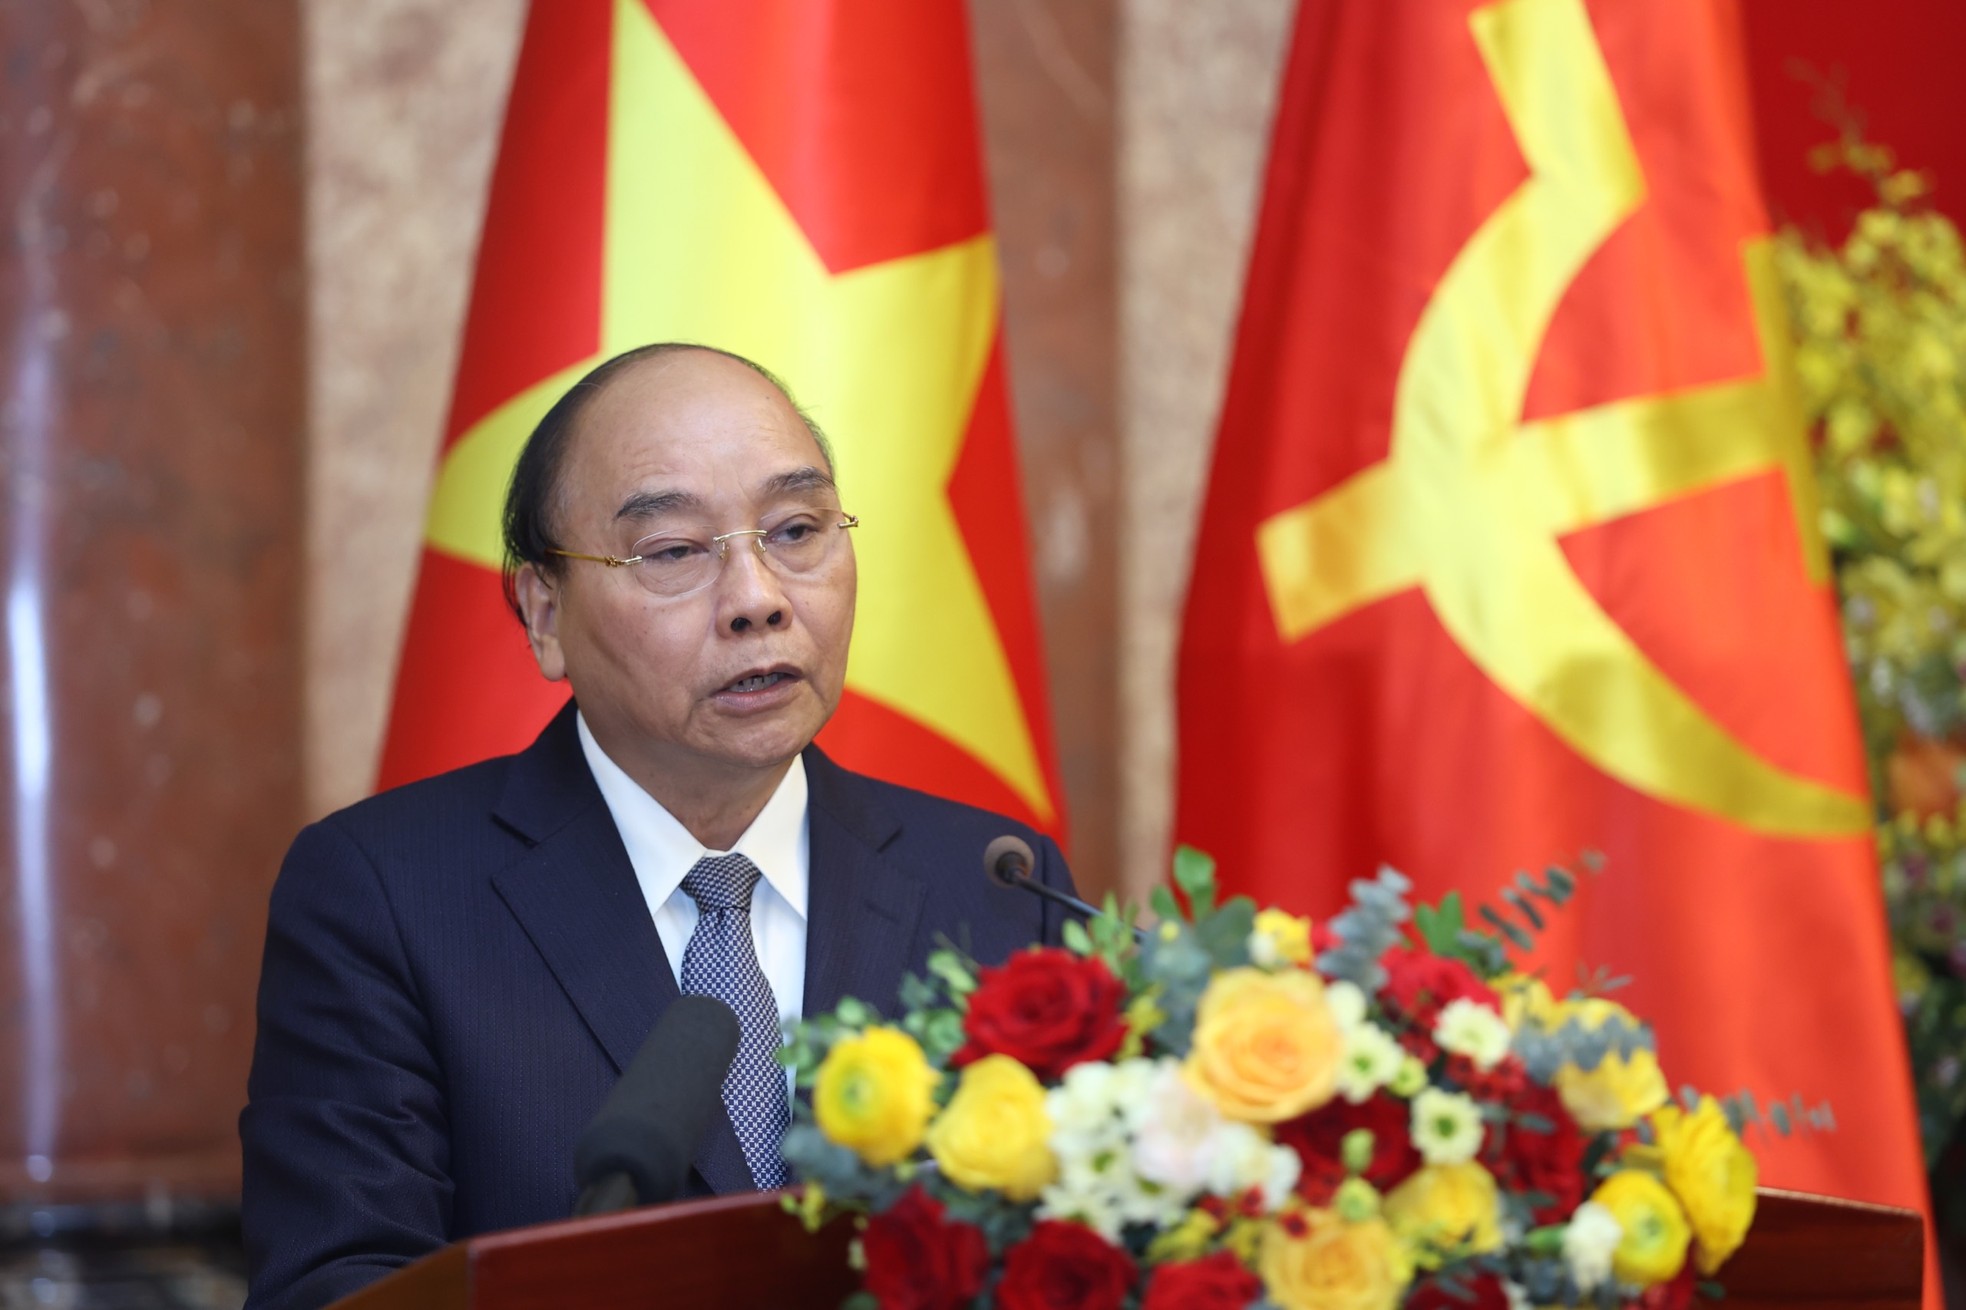 Nguyên Chủ tịch nước Nguyễn Xuân Phúc: Tôi chịu trách nhiệm chính trị của người đứng đầu khi có một số cán bộ vi phạm - Ảnh 1.